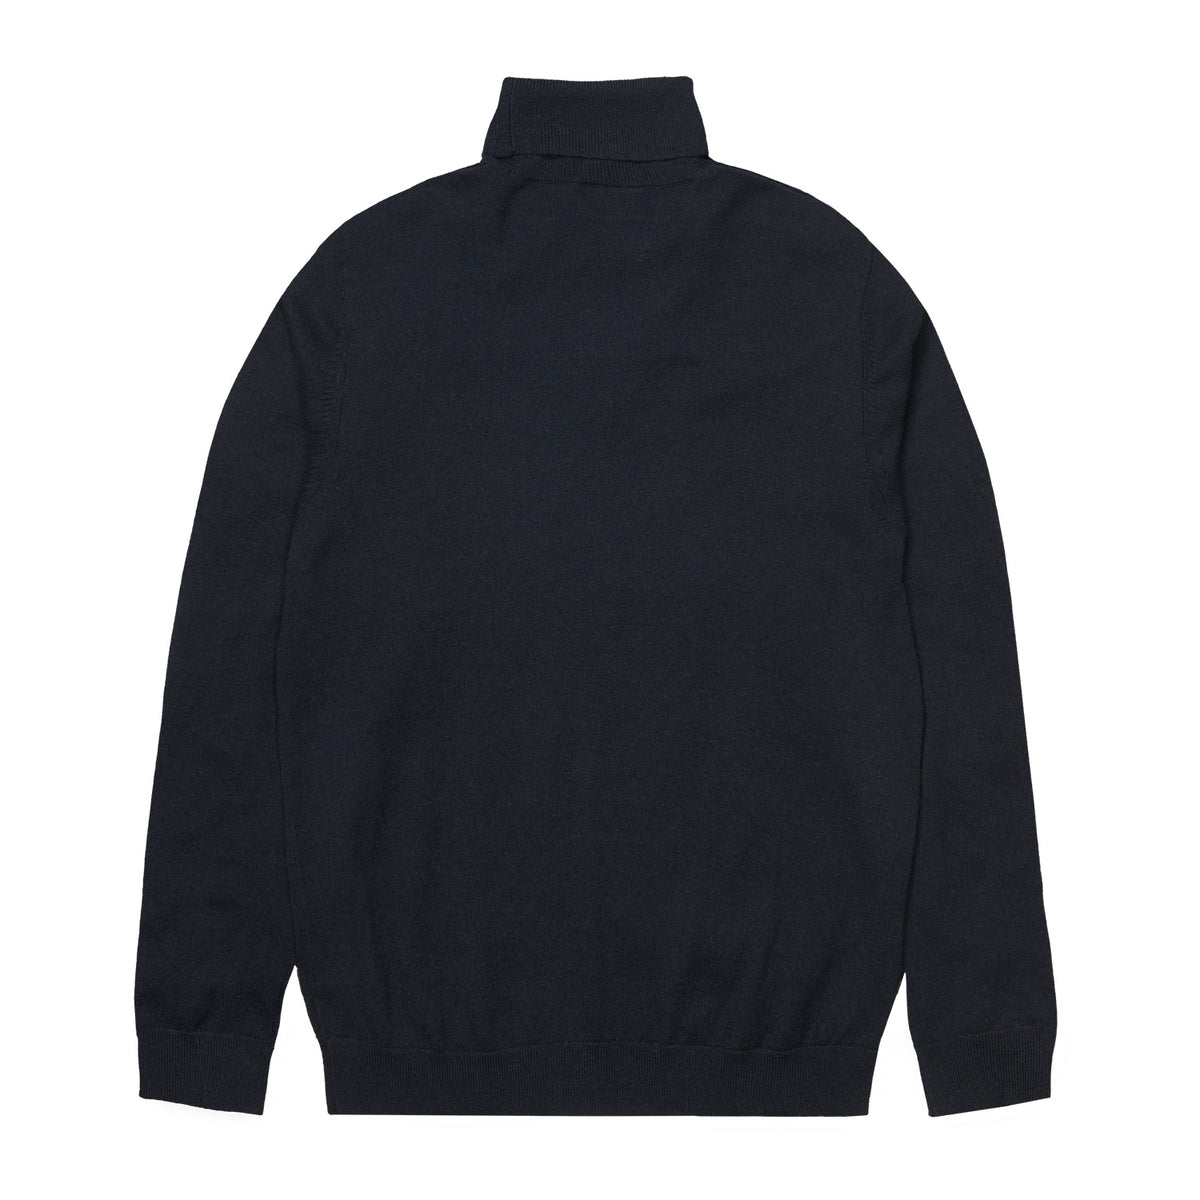 Carhartt Playoff Turtleneck Sweater - Dark Navy